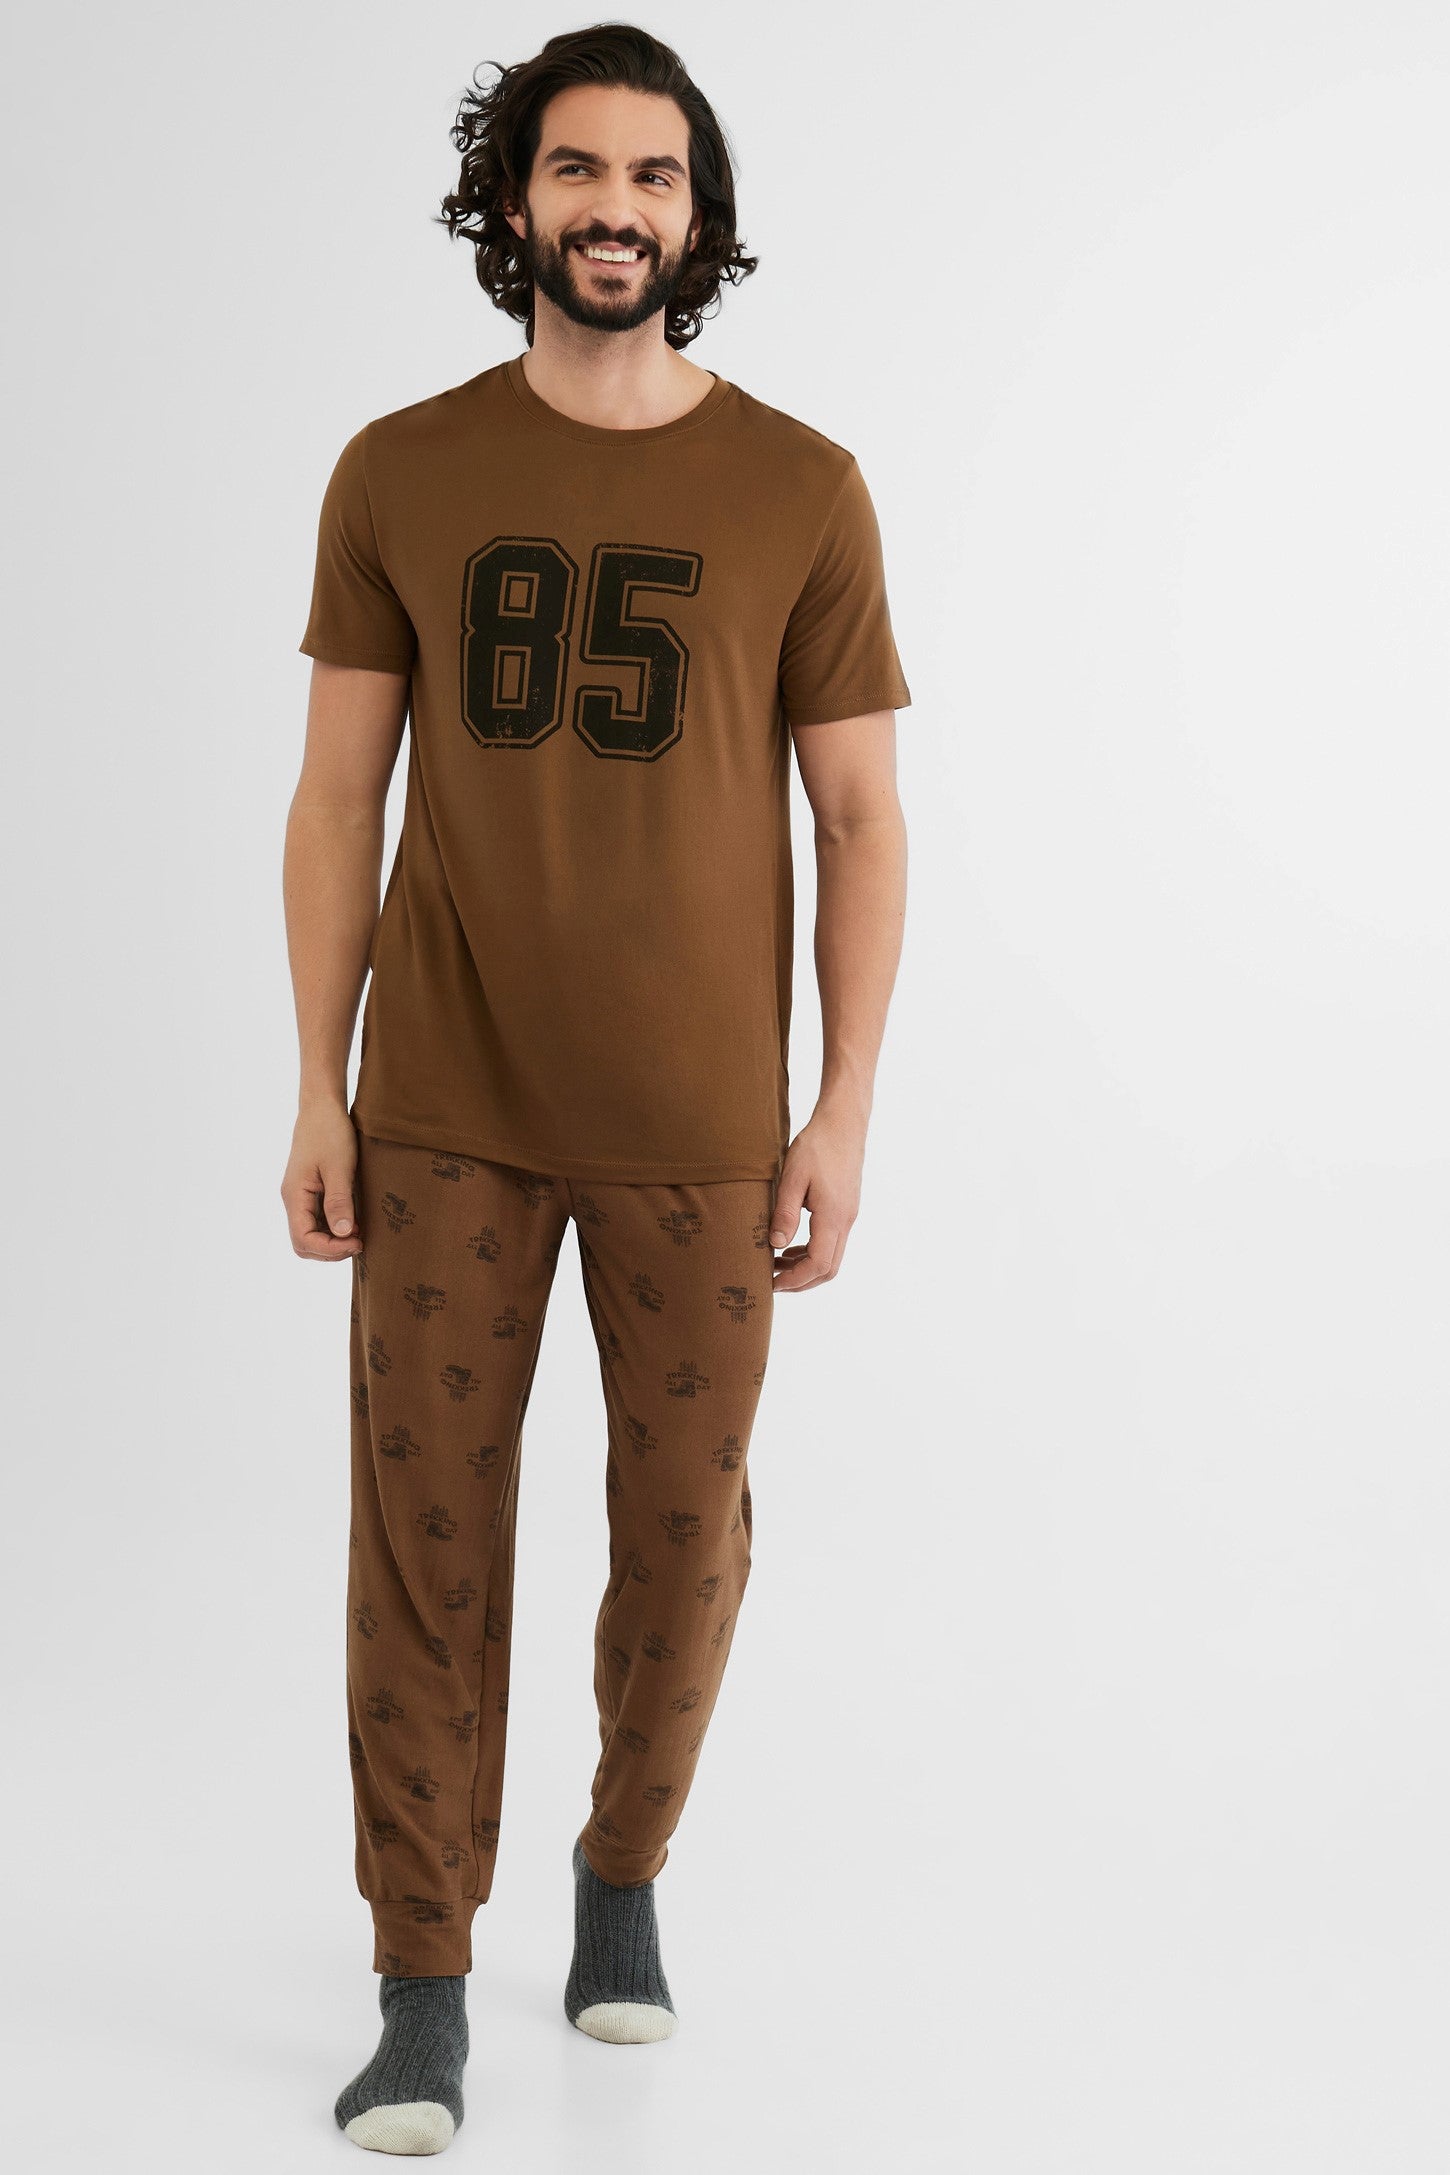 Pantalon pyjama jogger, 2/50$ - Homme && CAFE